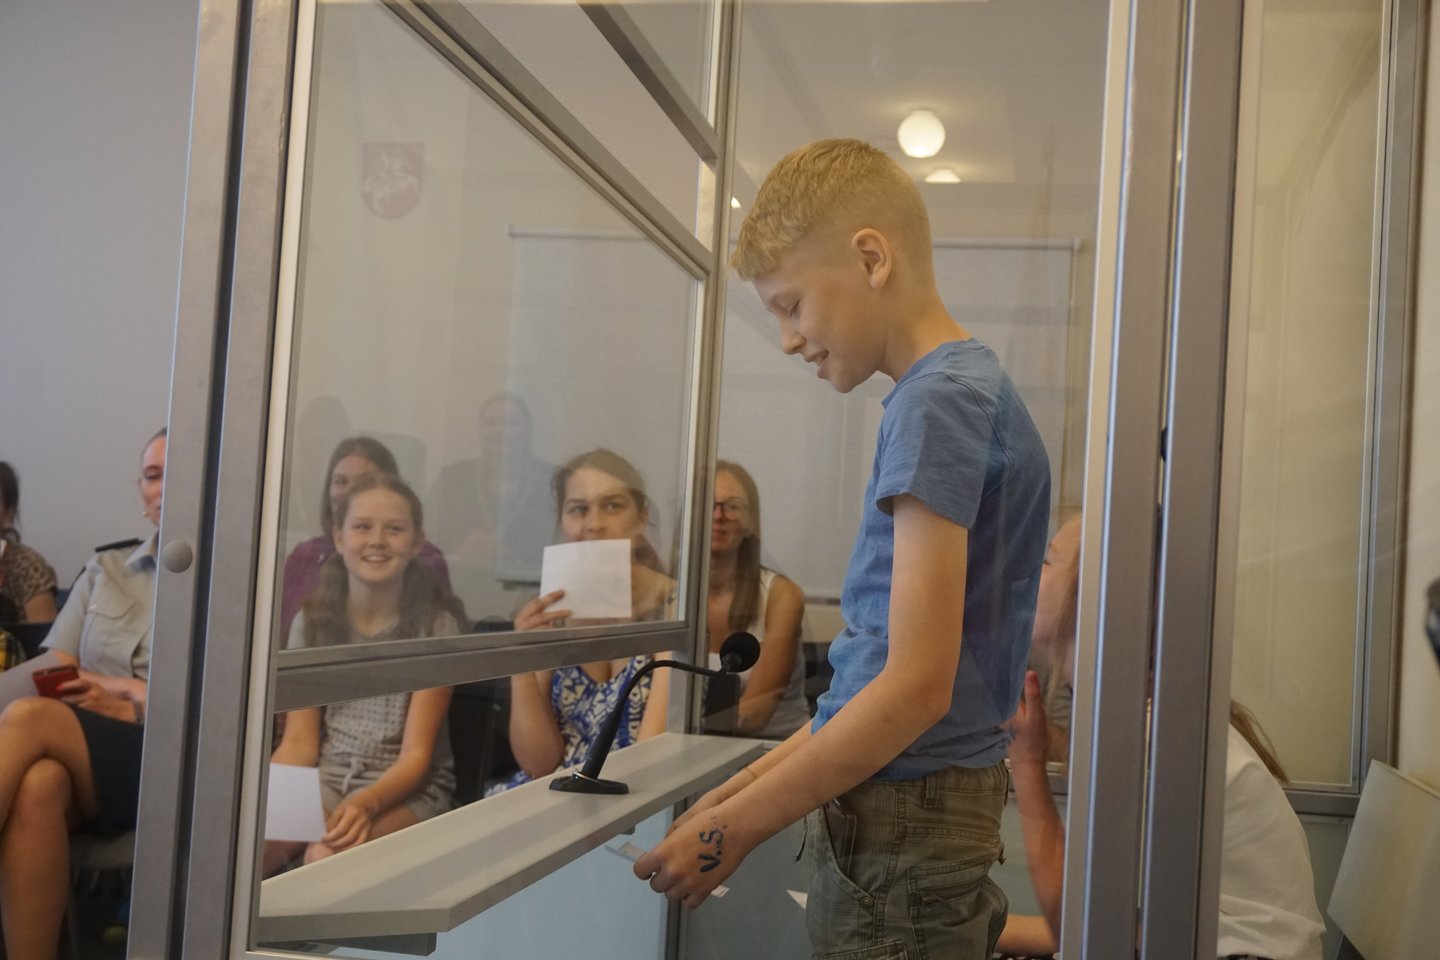  Tarptautinę vaikų gynimo dieną Kauno apylinkės teisme vyko inszenizuotas renginys moksleiviams, po kurio vaikai piešė, vaišinosi skanėstais.<br> Kauno apylinkės teismo nuotr.